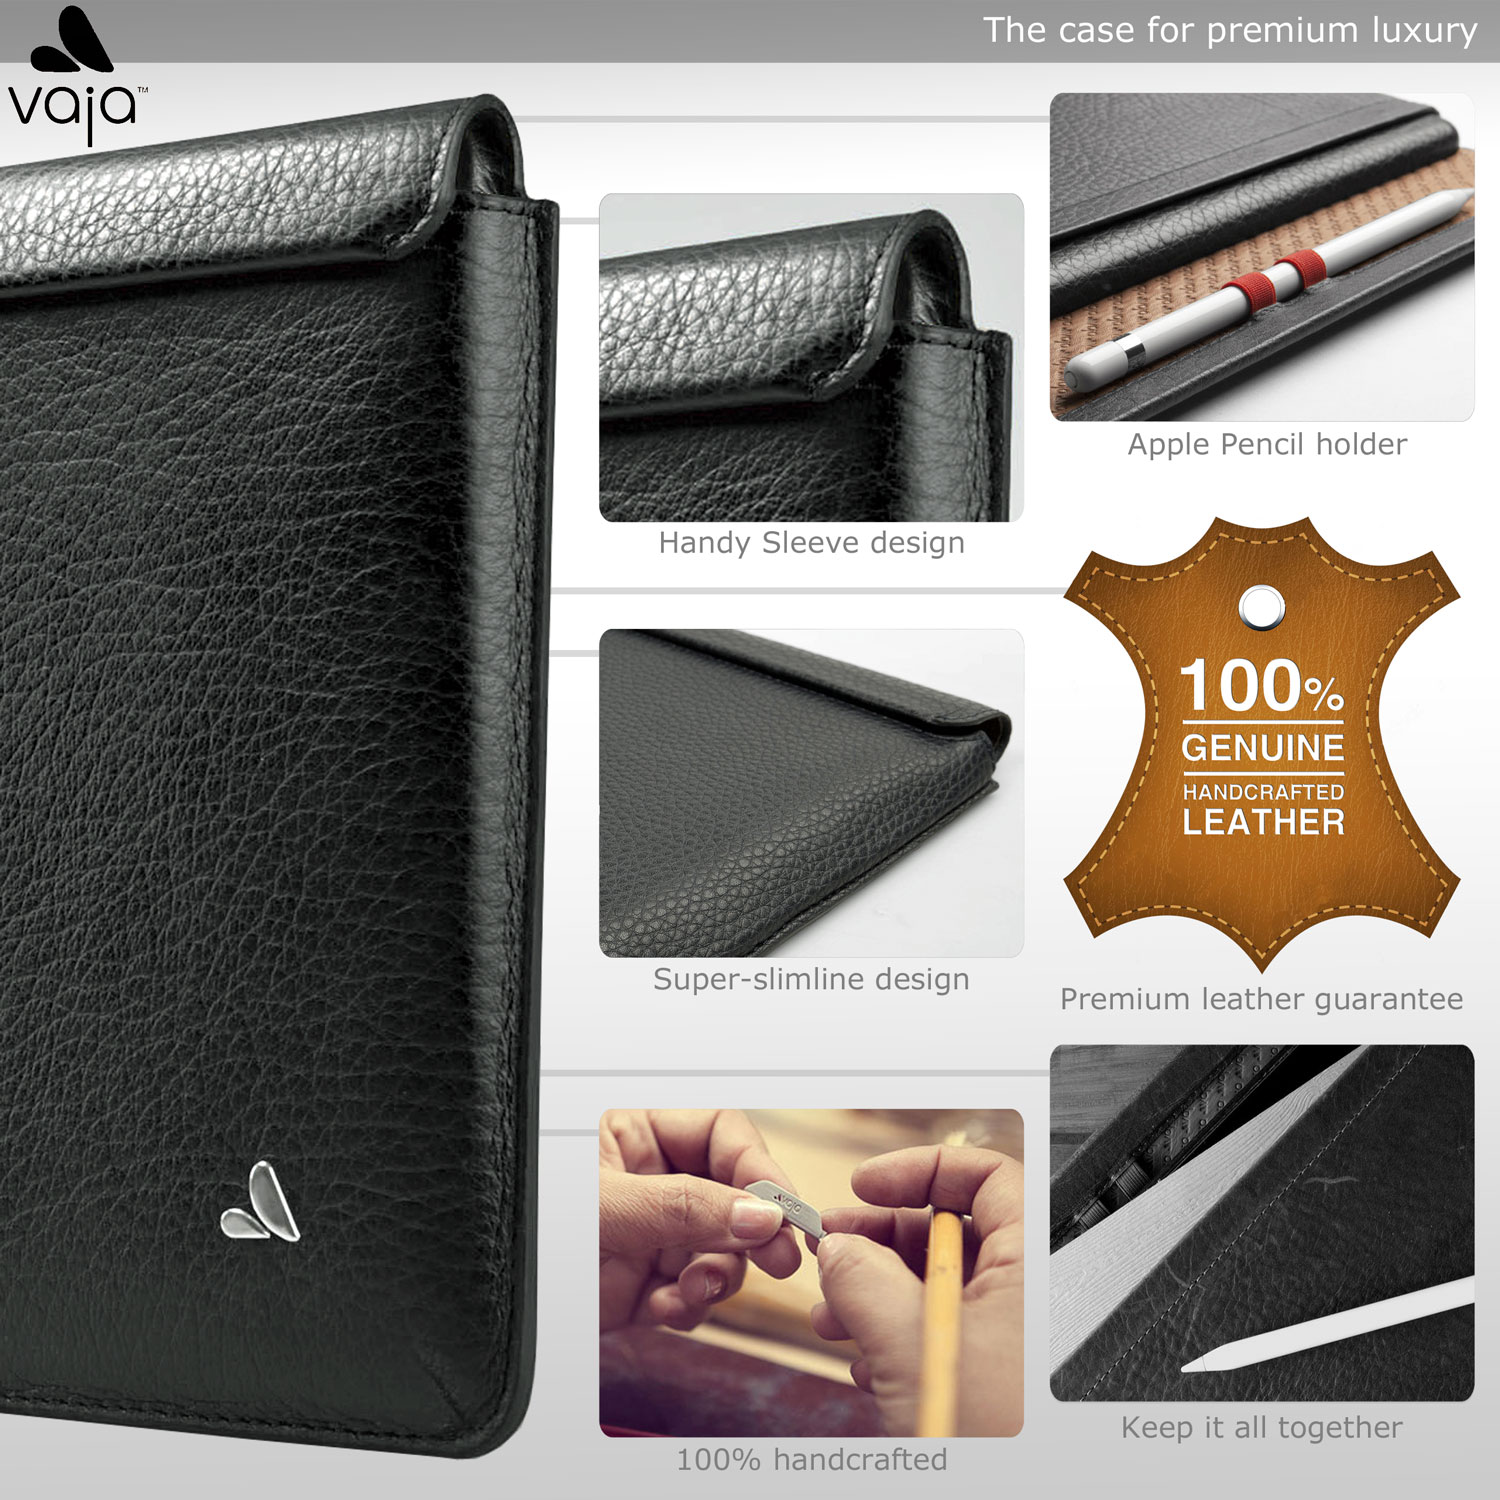 Vaja Genuine Handcrafted Leather iPad Pro Sleeve Case - Black